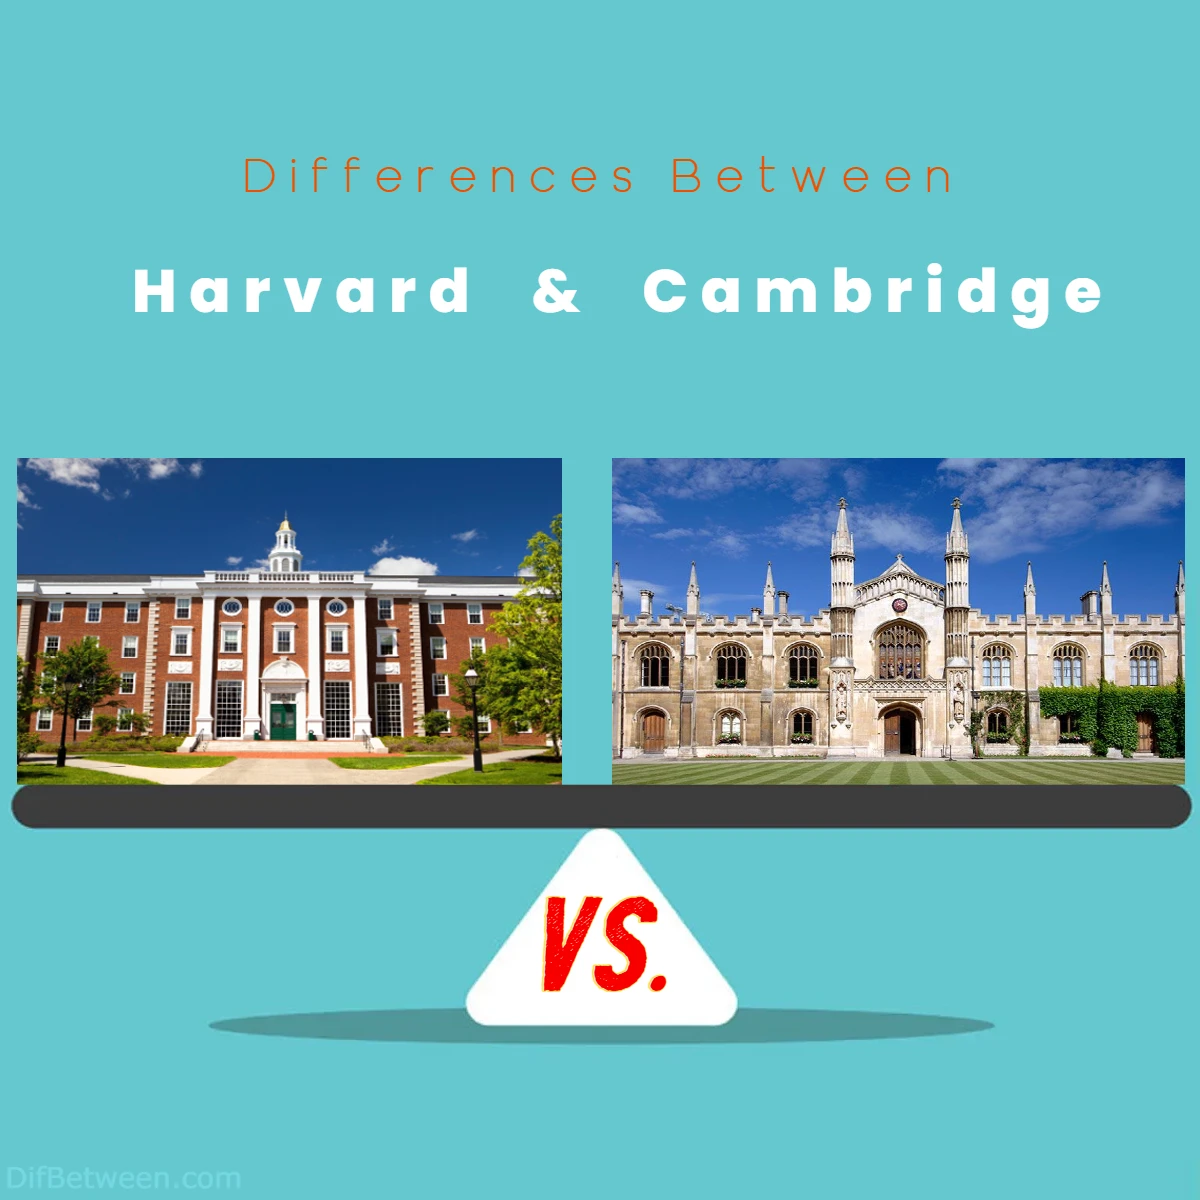 Differences Between Harvard vs Cambridge